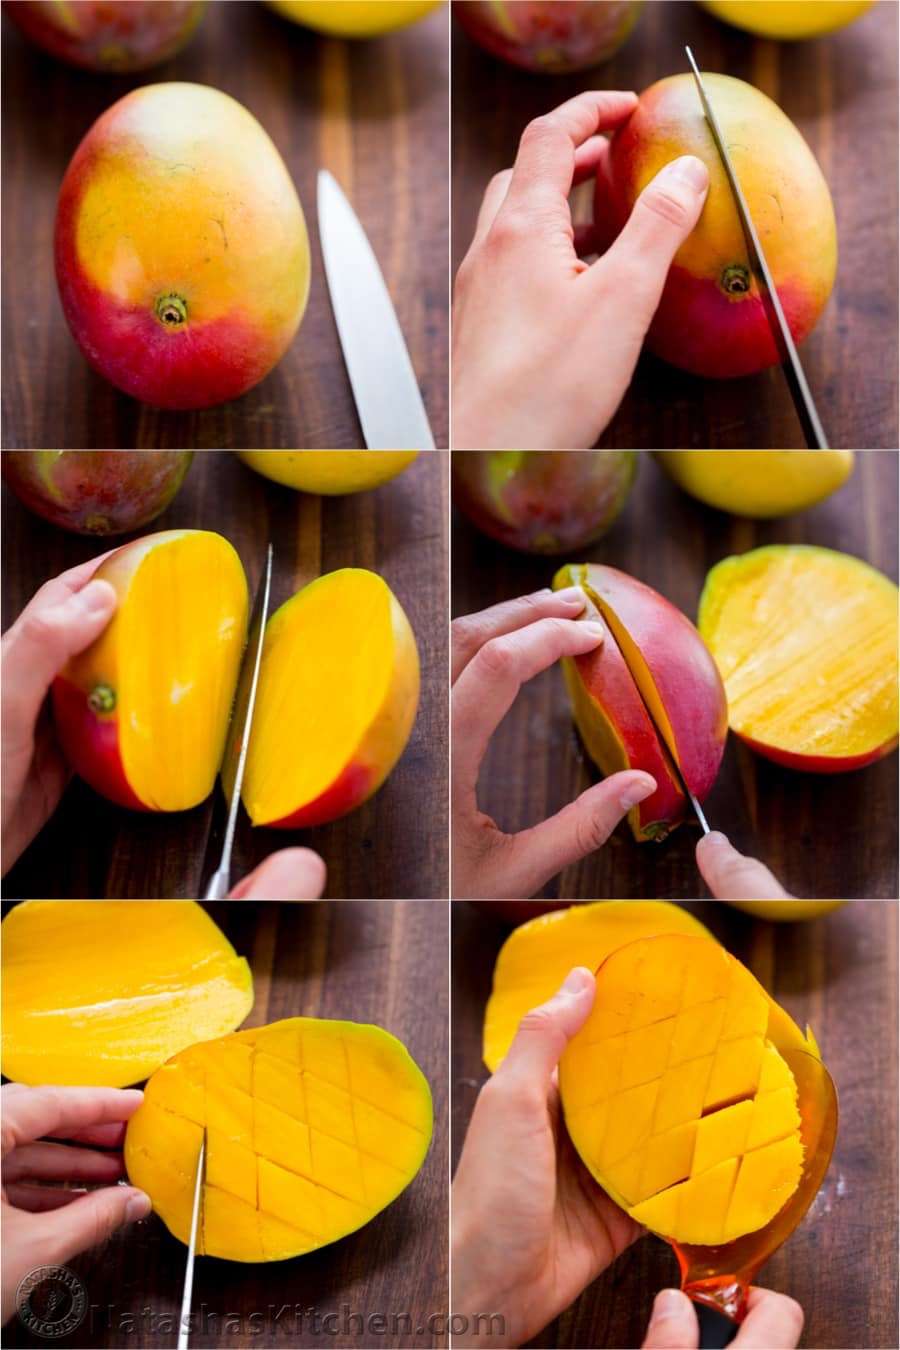 Как правильно разделать манго. Разделать манго. Красивомнарезатт манго. Манго нарезанный. Красиво порезать манго.